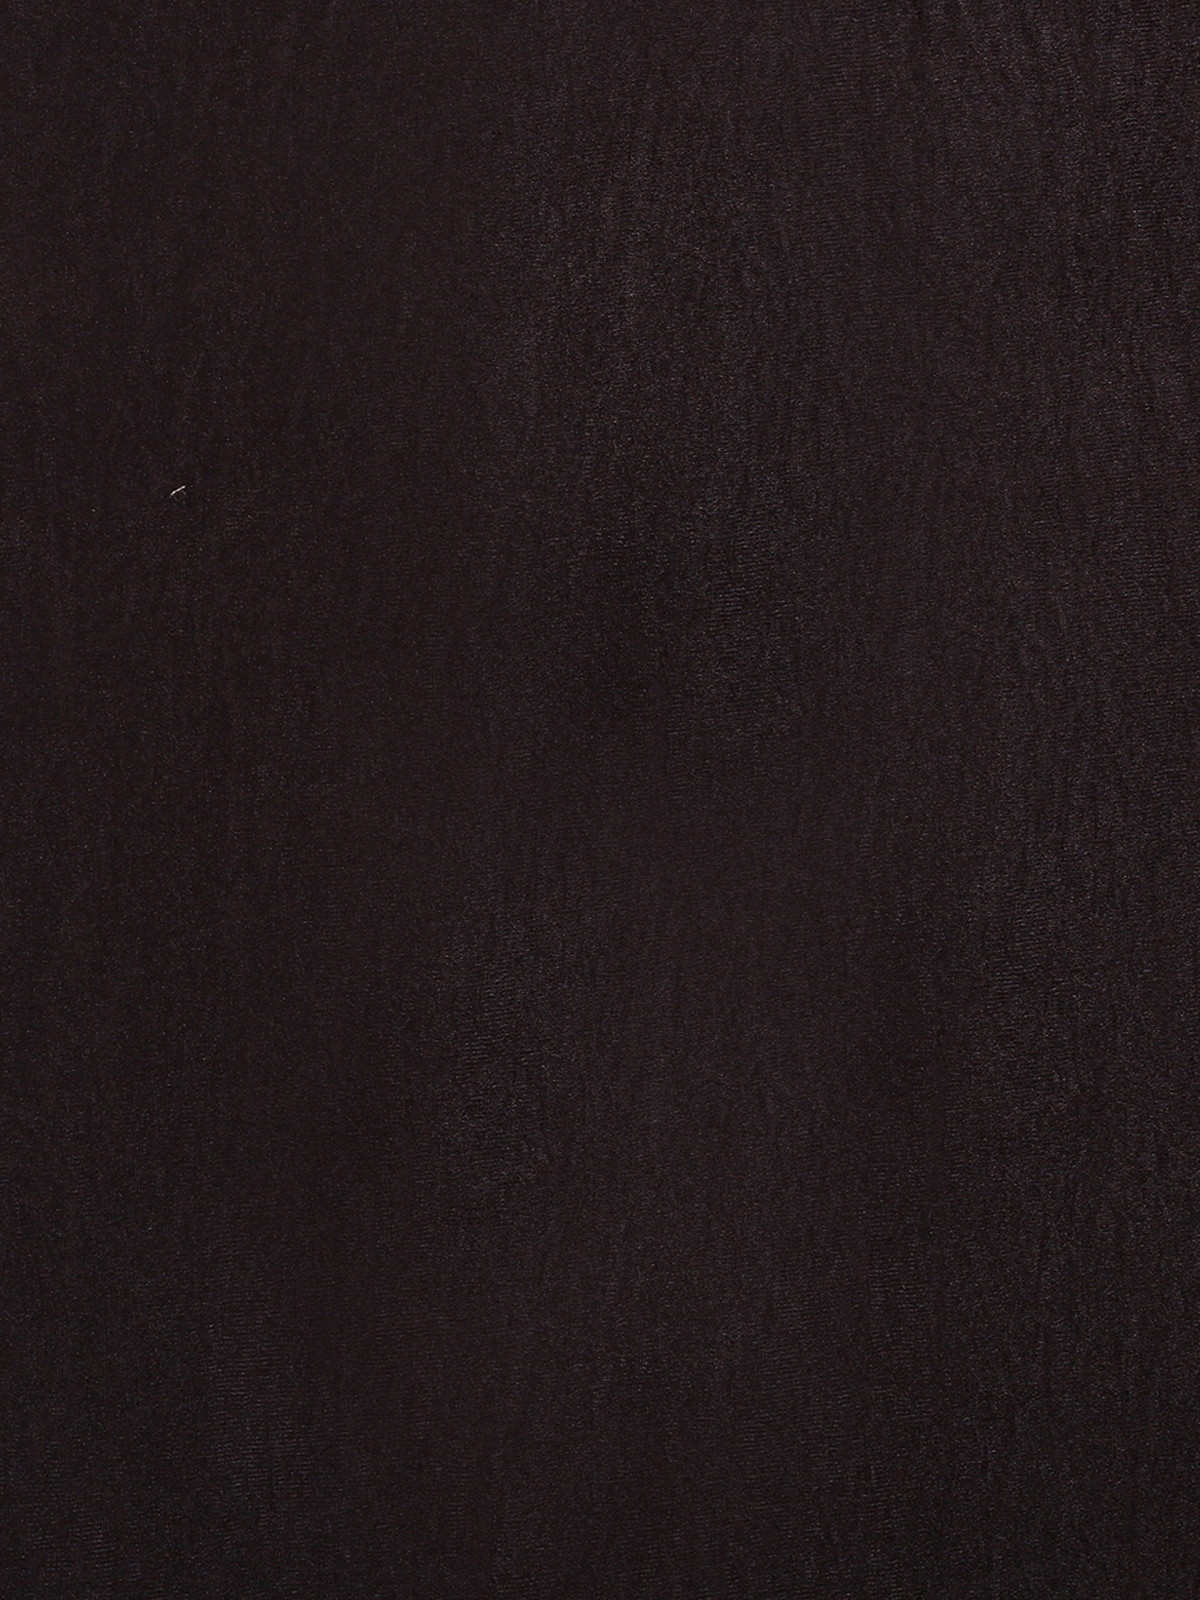 Kuber Industries Self Print Room Darkening Door Curtain, 7 Feet (Brown)